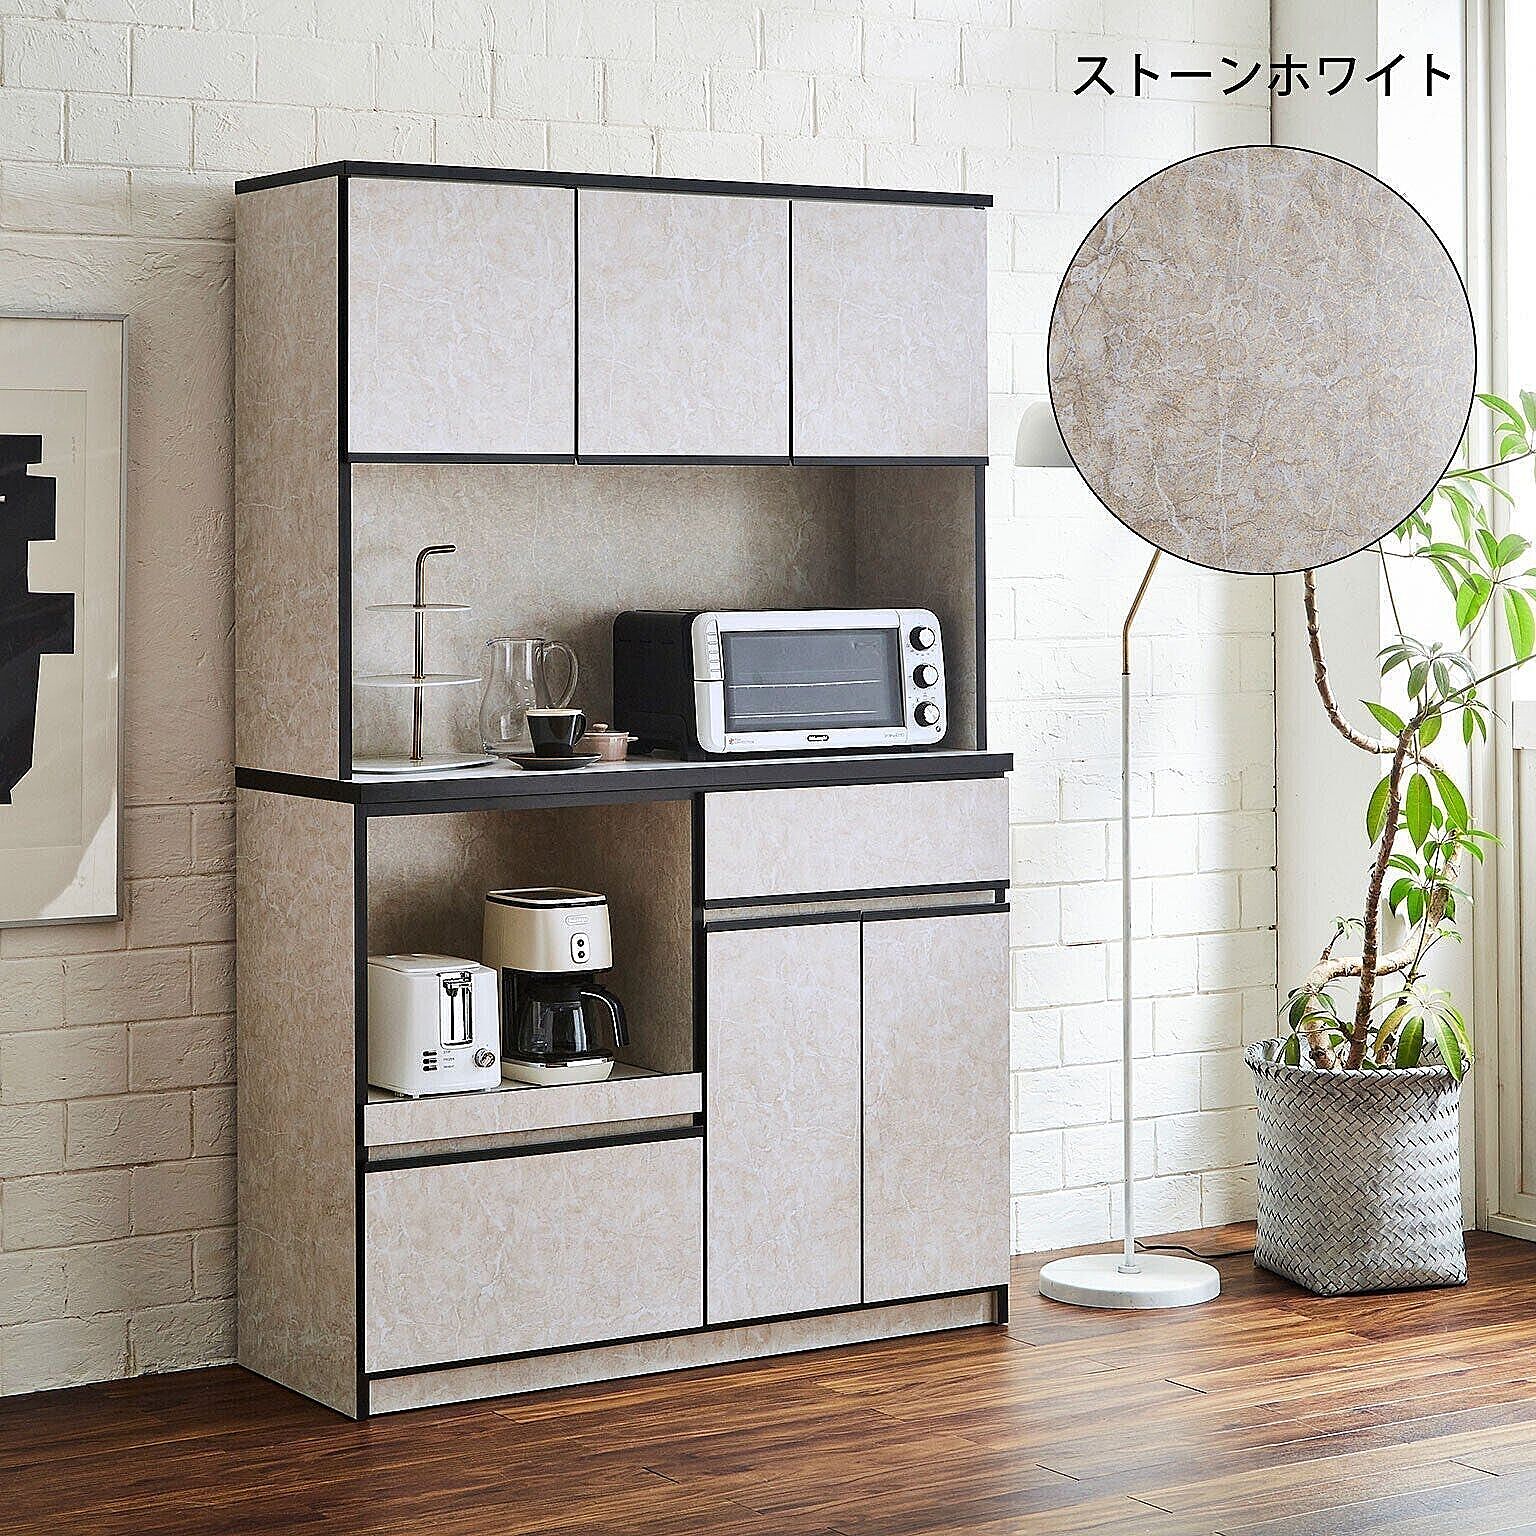 食器棚 レンジ台 キッチンボード レンジボード ナポリ120 幅116.3cm 完成品 日本製